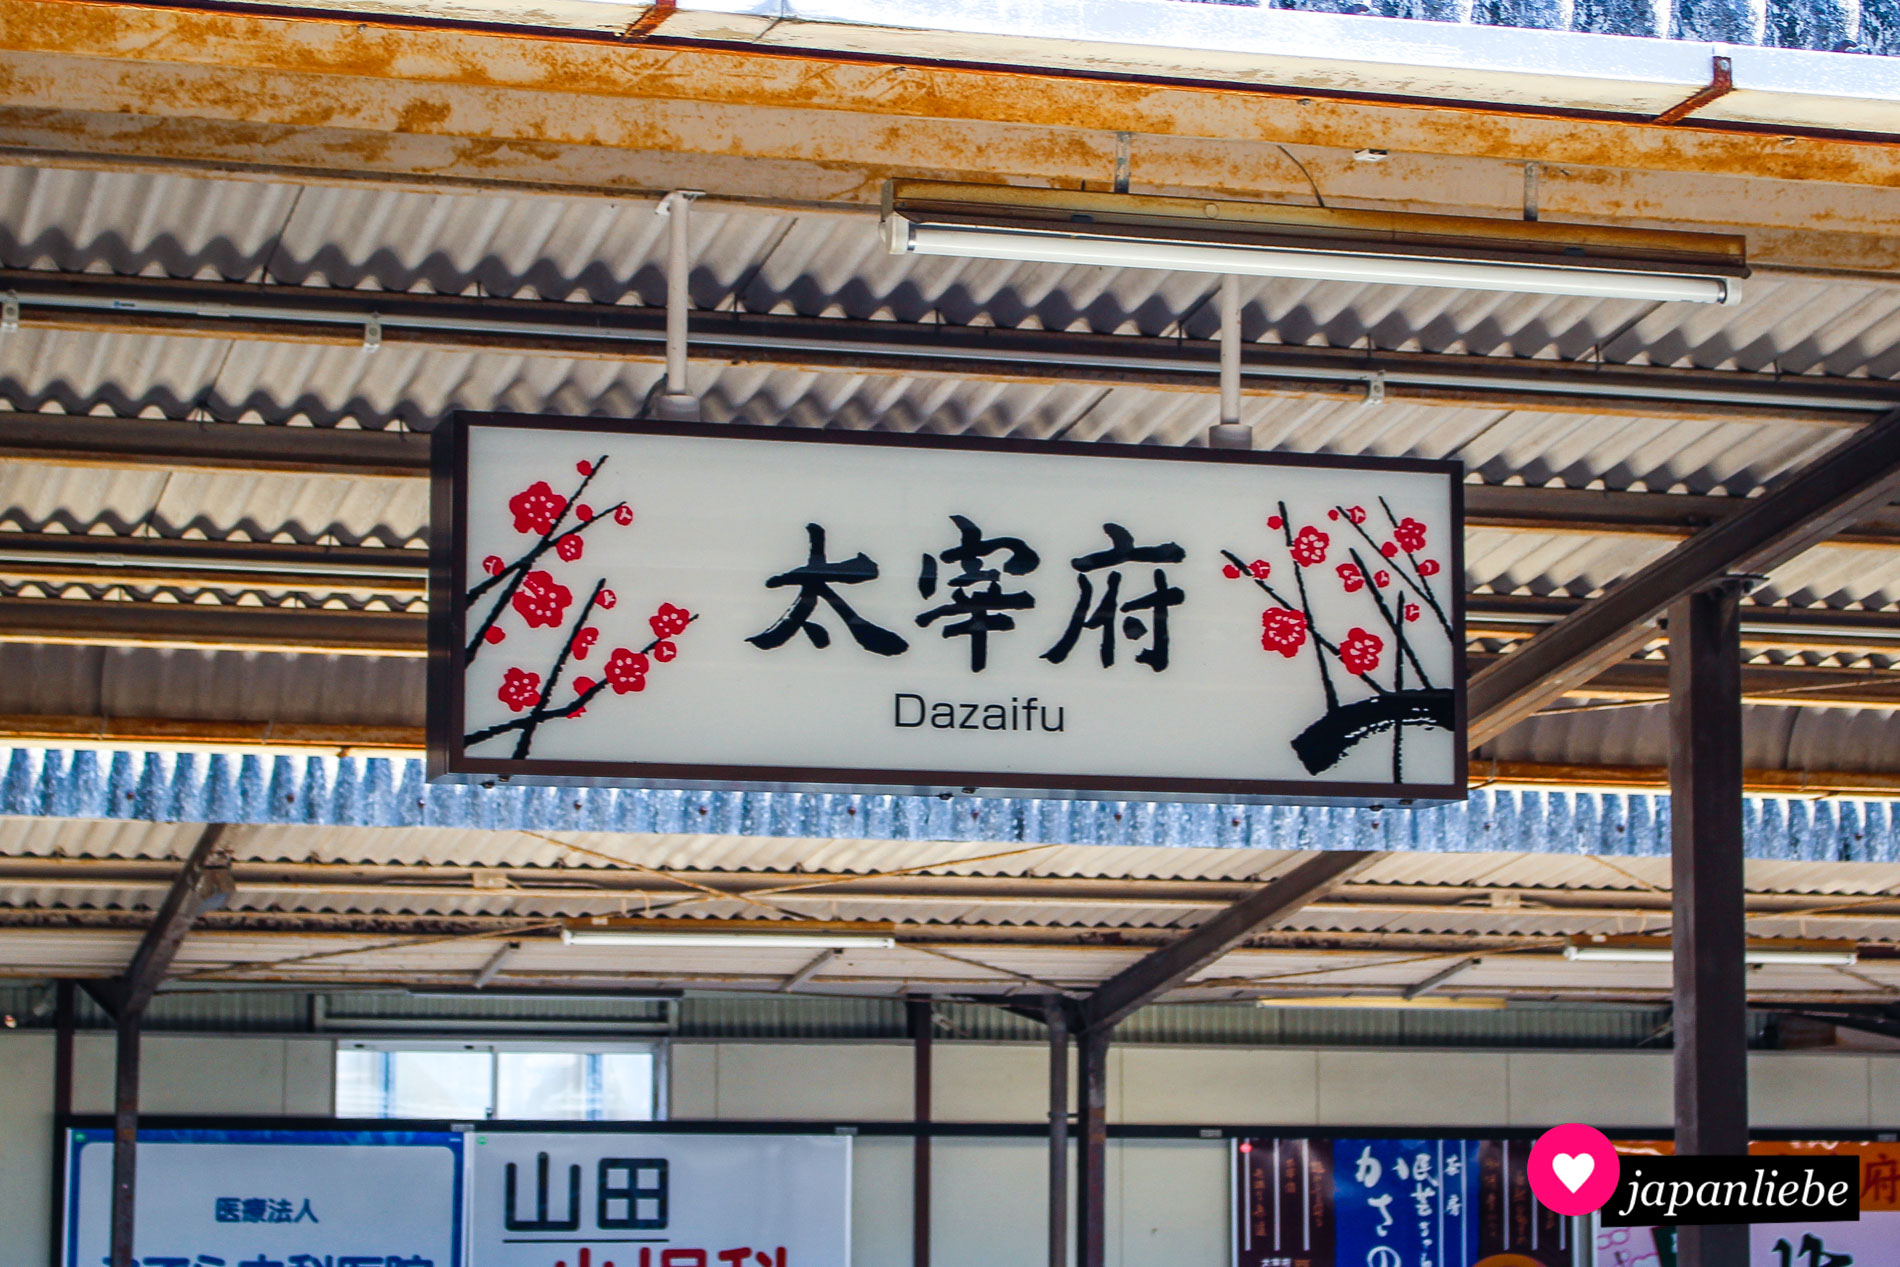 Bereits das Namensschild der Station in Dazaifu deutet auf die vielen Pflaumenbäume hin, die auf dem Gelände des Tenman-gū-Schreins wachsen.